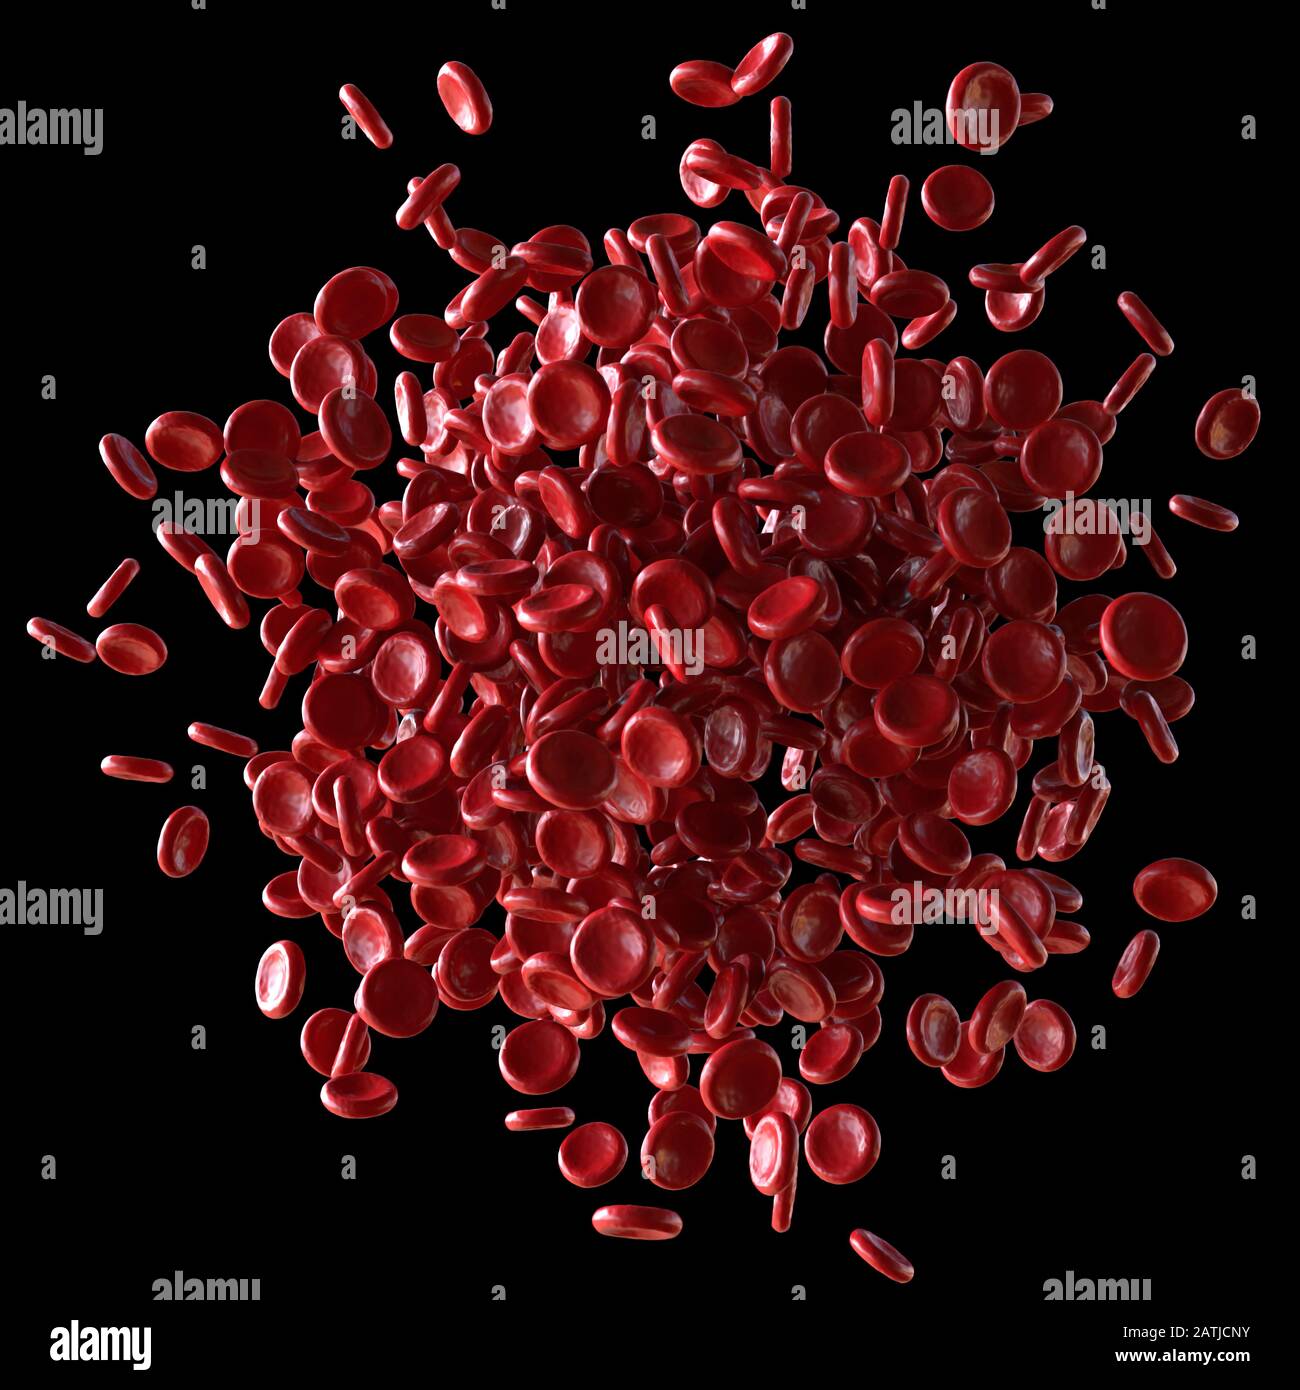 Les globules rouges débordent sur fond noir. Illustration tridimensionnelle, image conceptuelle. Chemin d'écrêtage inclus. Banque D'Images